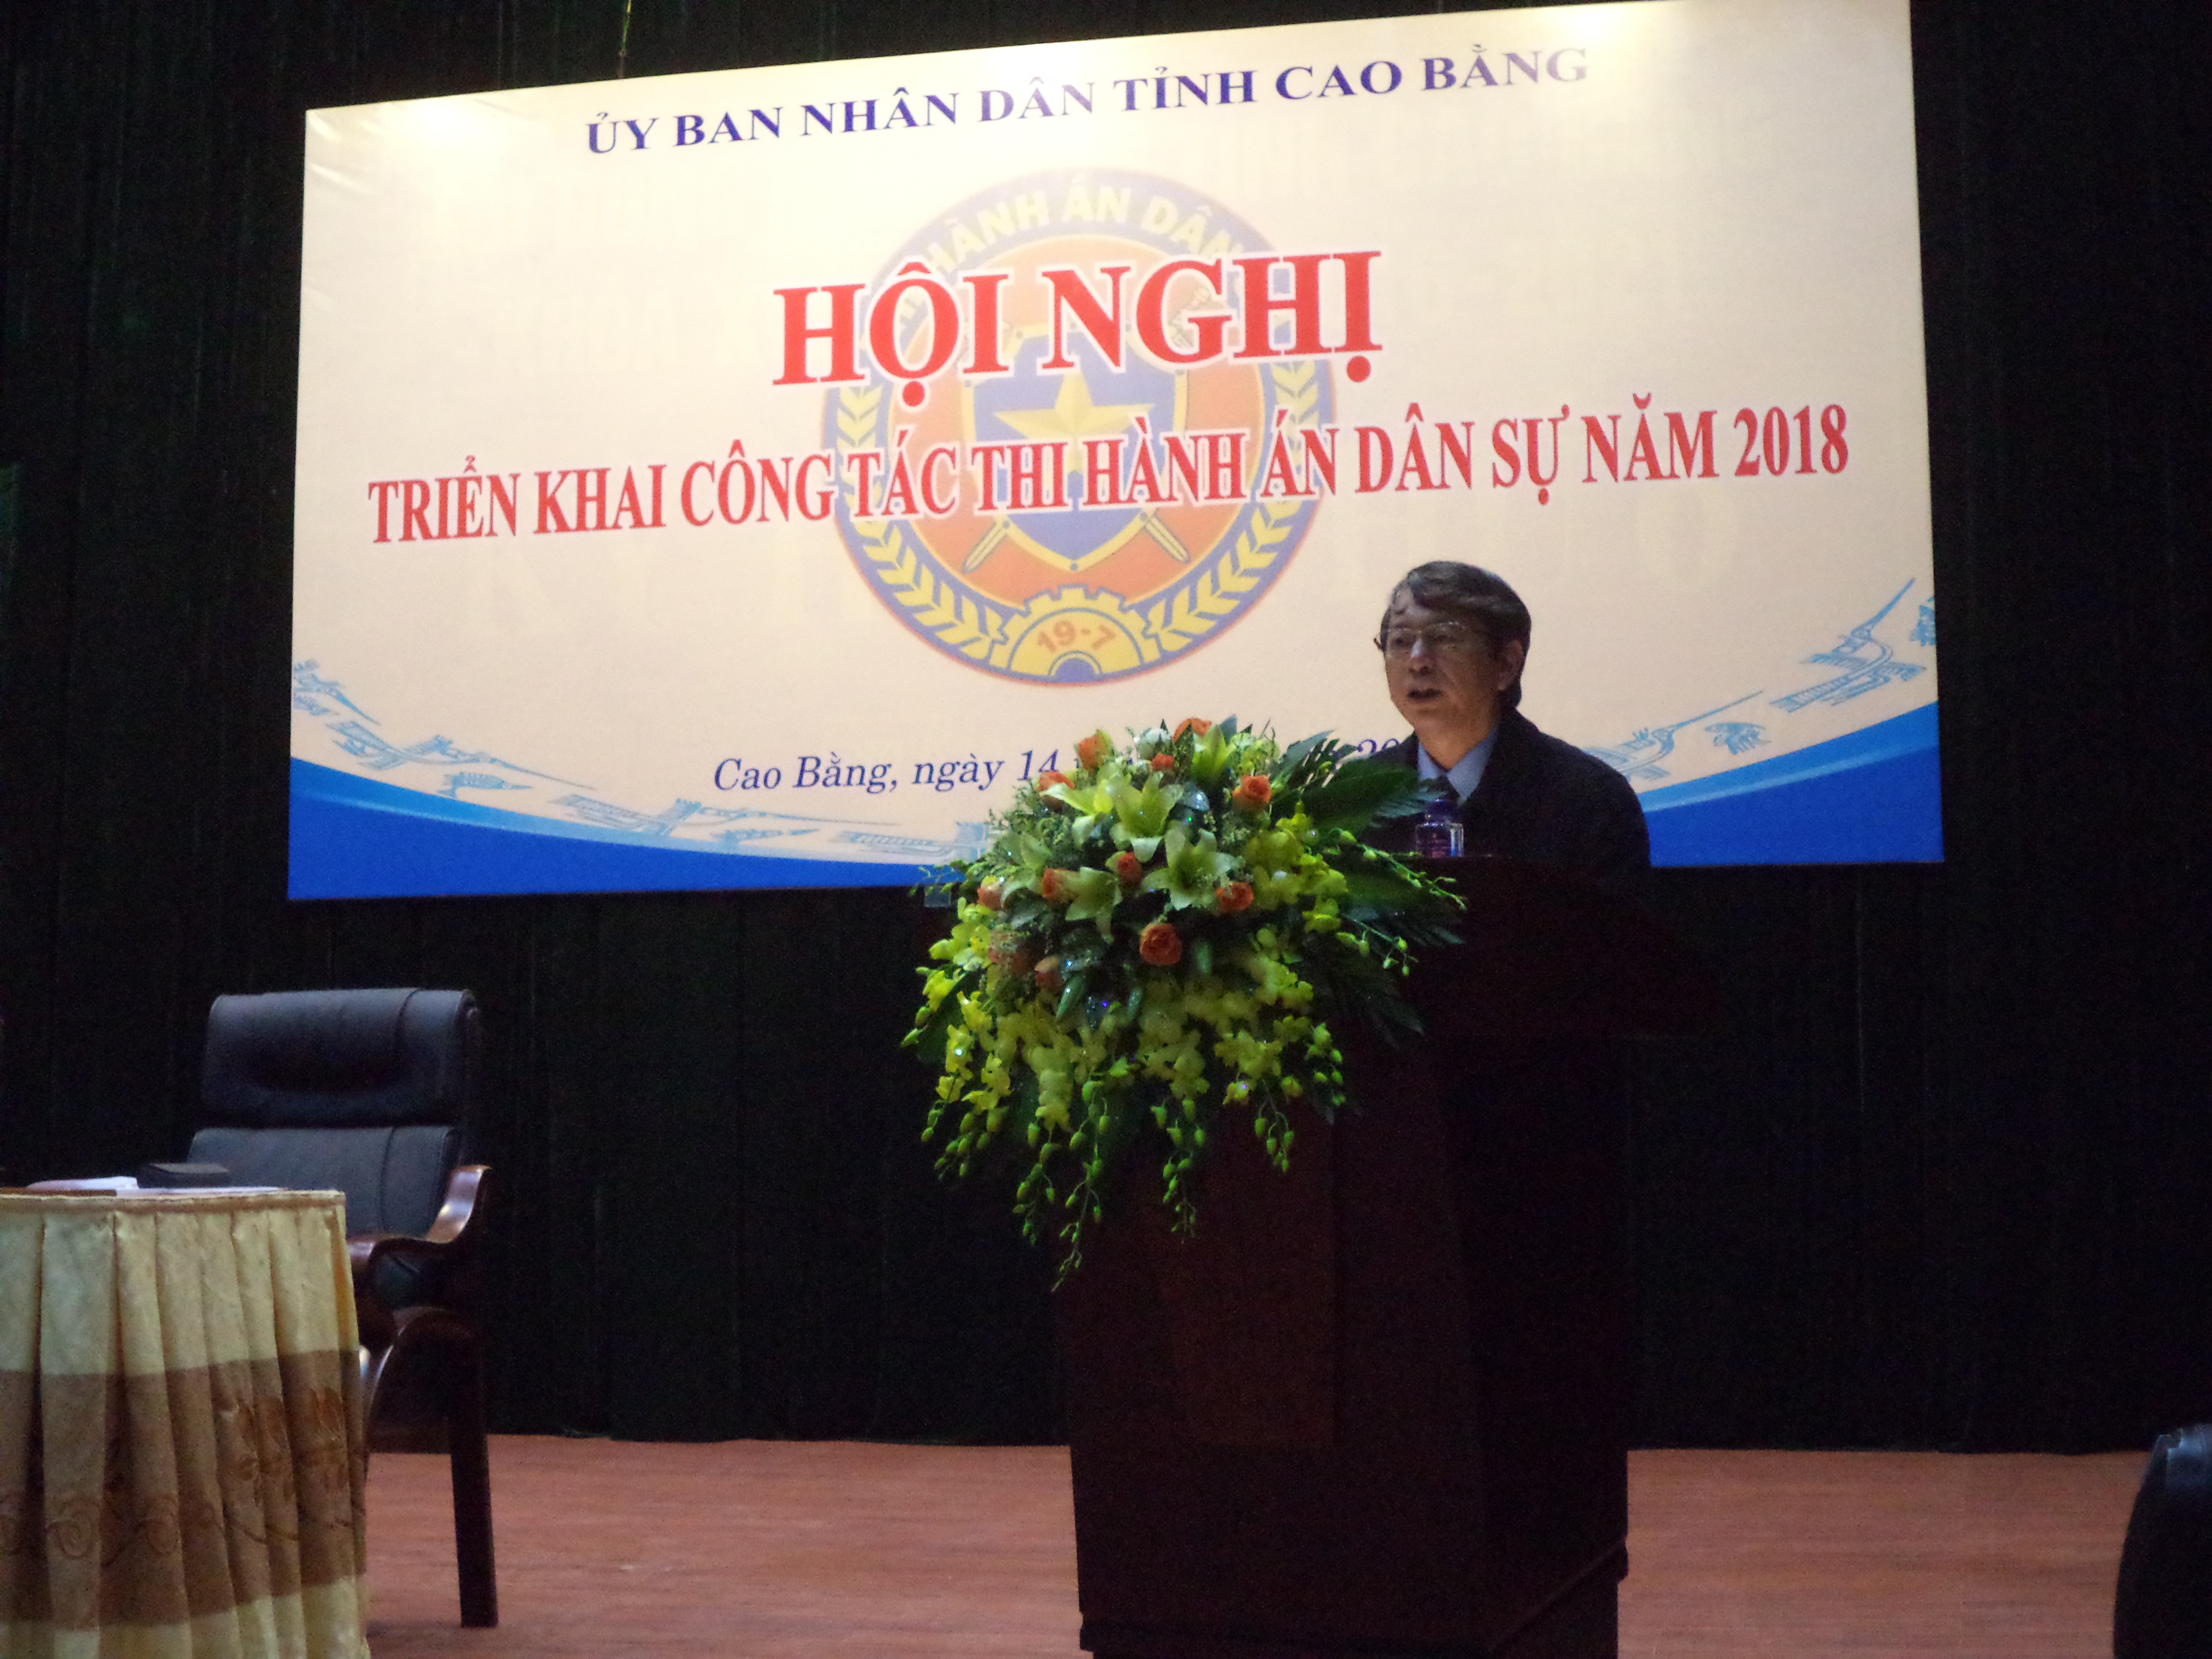 Ủy ban nhân dân tỉnh Cao Bằng tổ chức Hội nghị triển khai công tác Thi hành án dân sự năm 2018